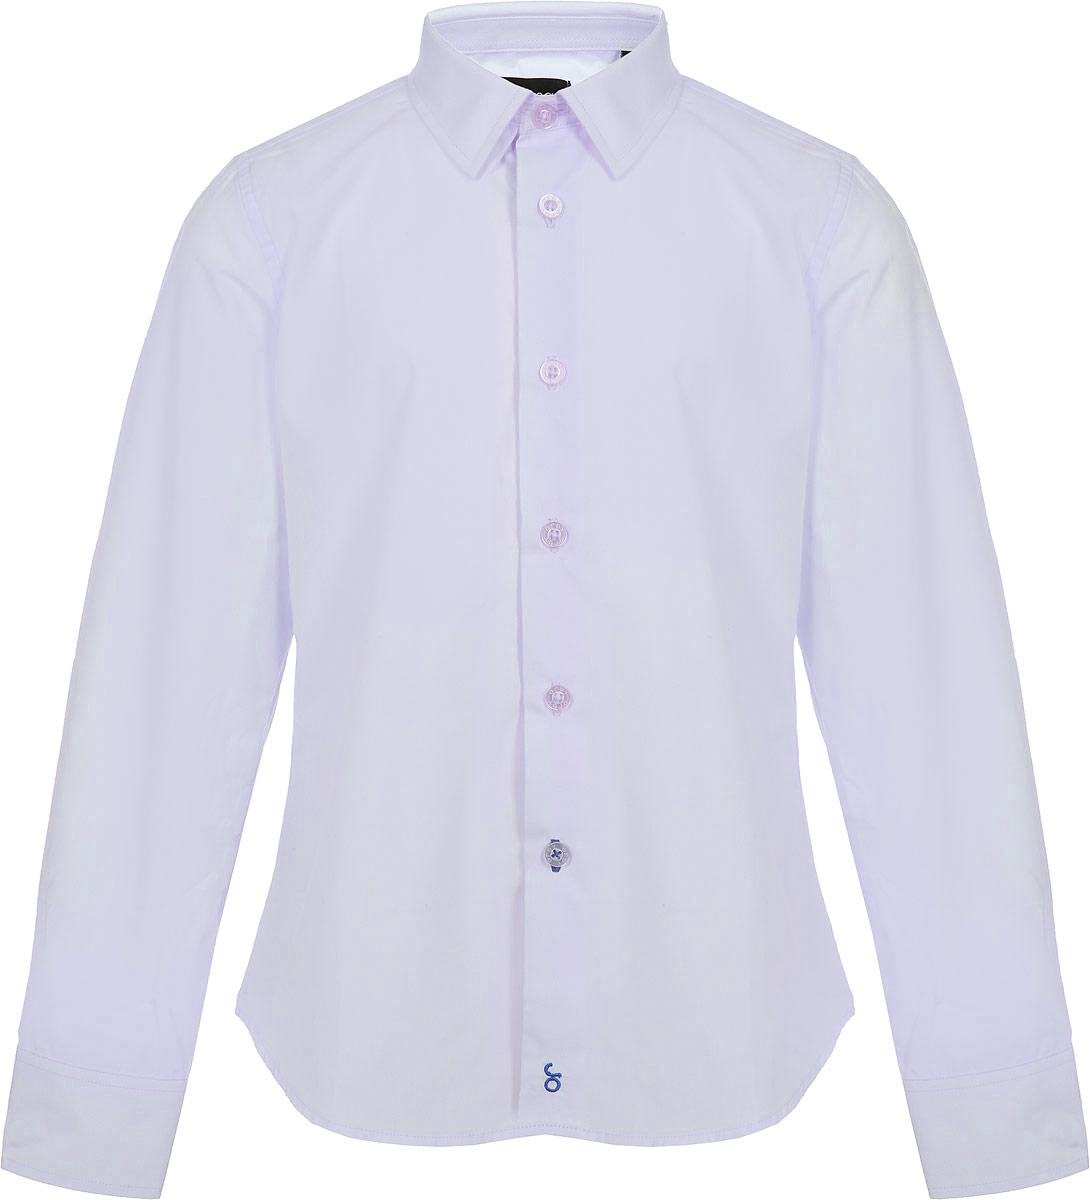 Рубашка для мальчика Orby, цвет: серый. 80453_OLB. Размер 122